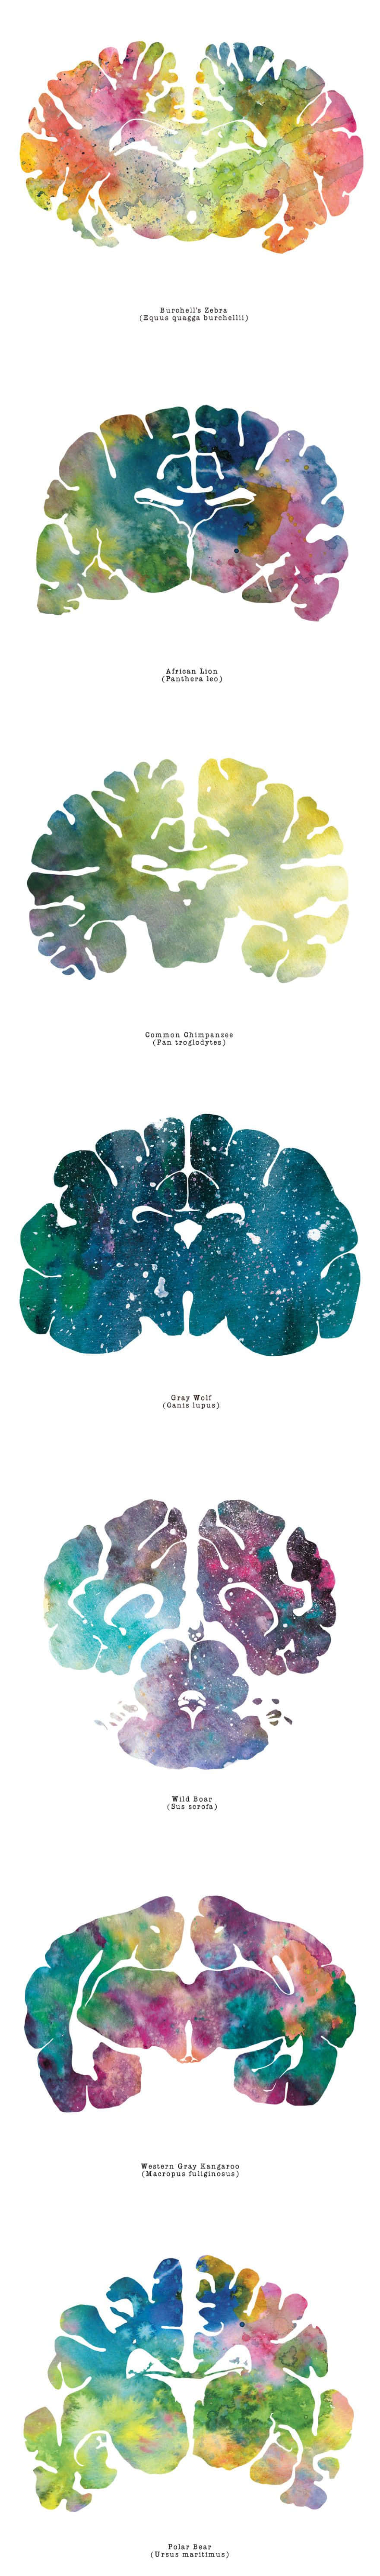 En plakat, der viser forskellige farver af hjerner.